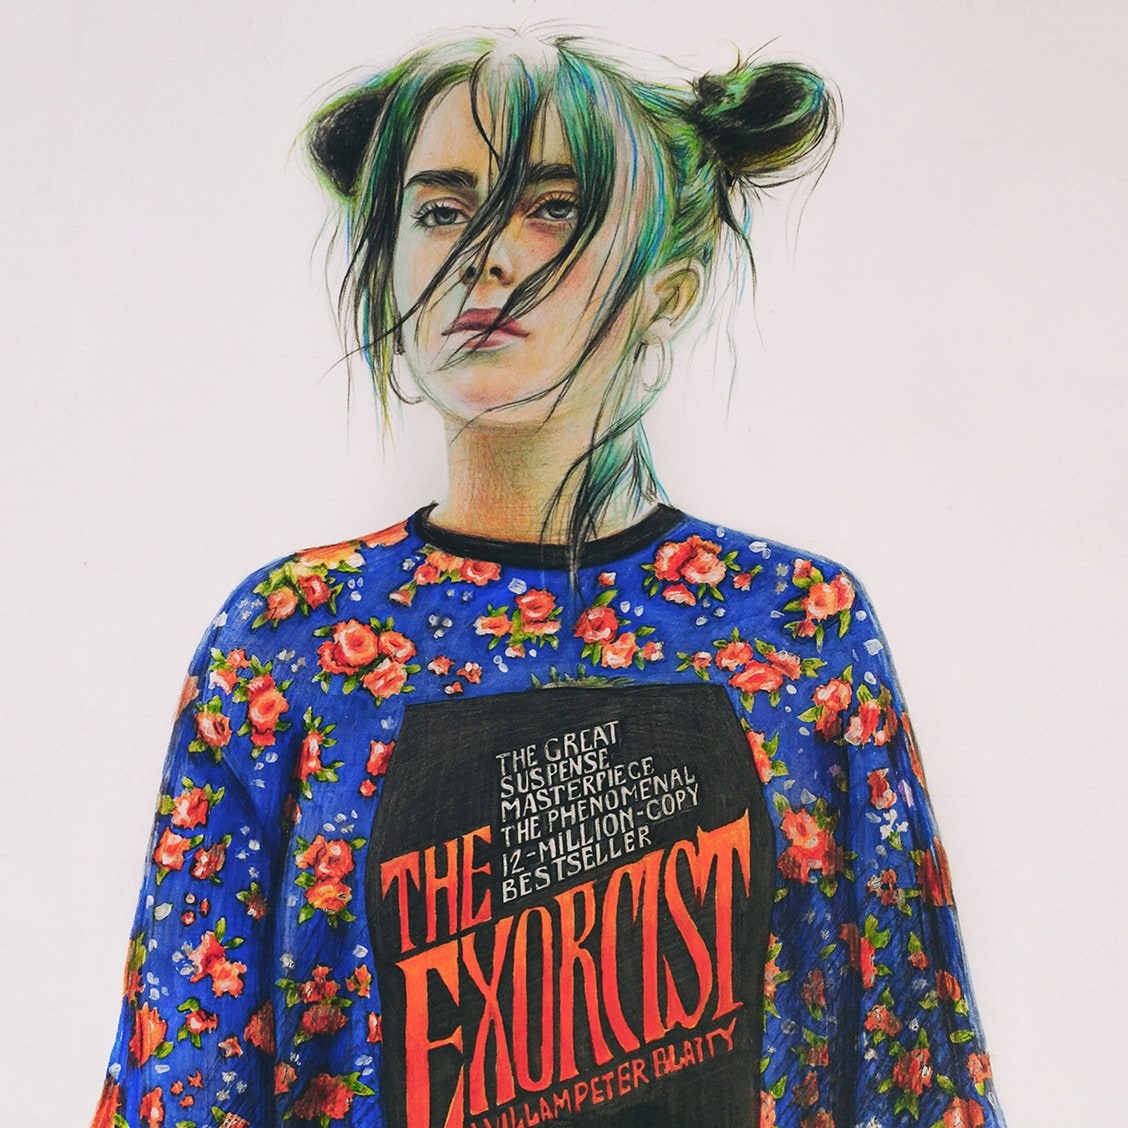 16-летняя художница из Пермского края нарисовала обложку для американского Vogue с Билли Айлиш